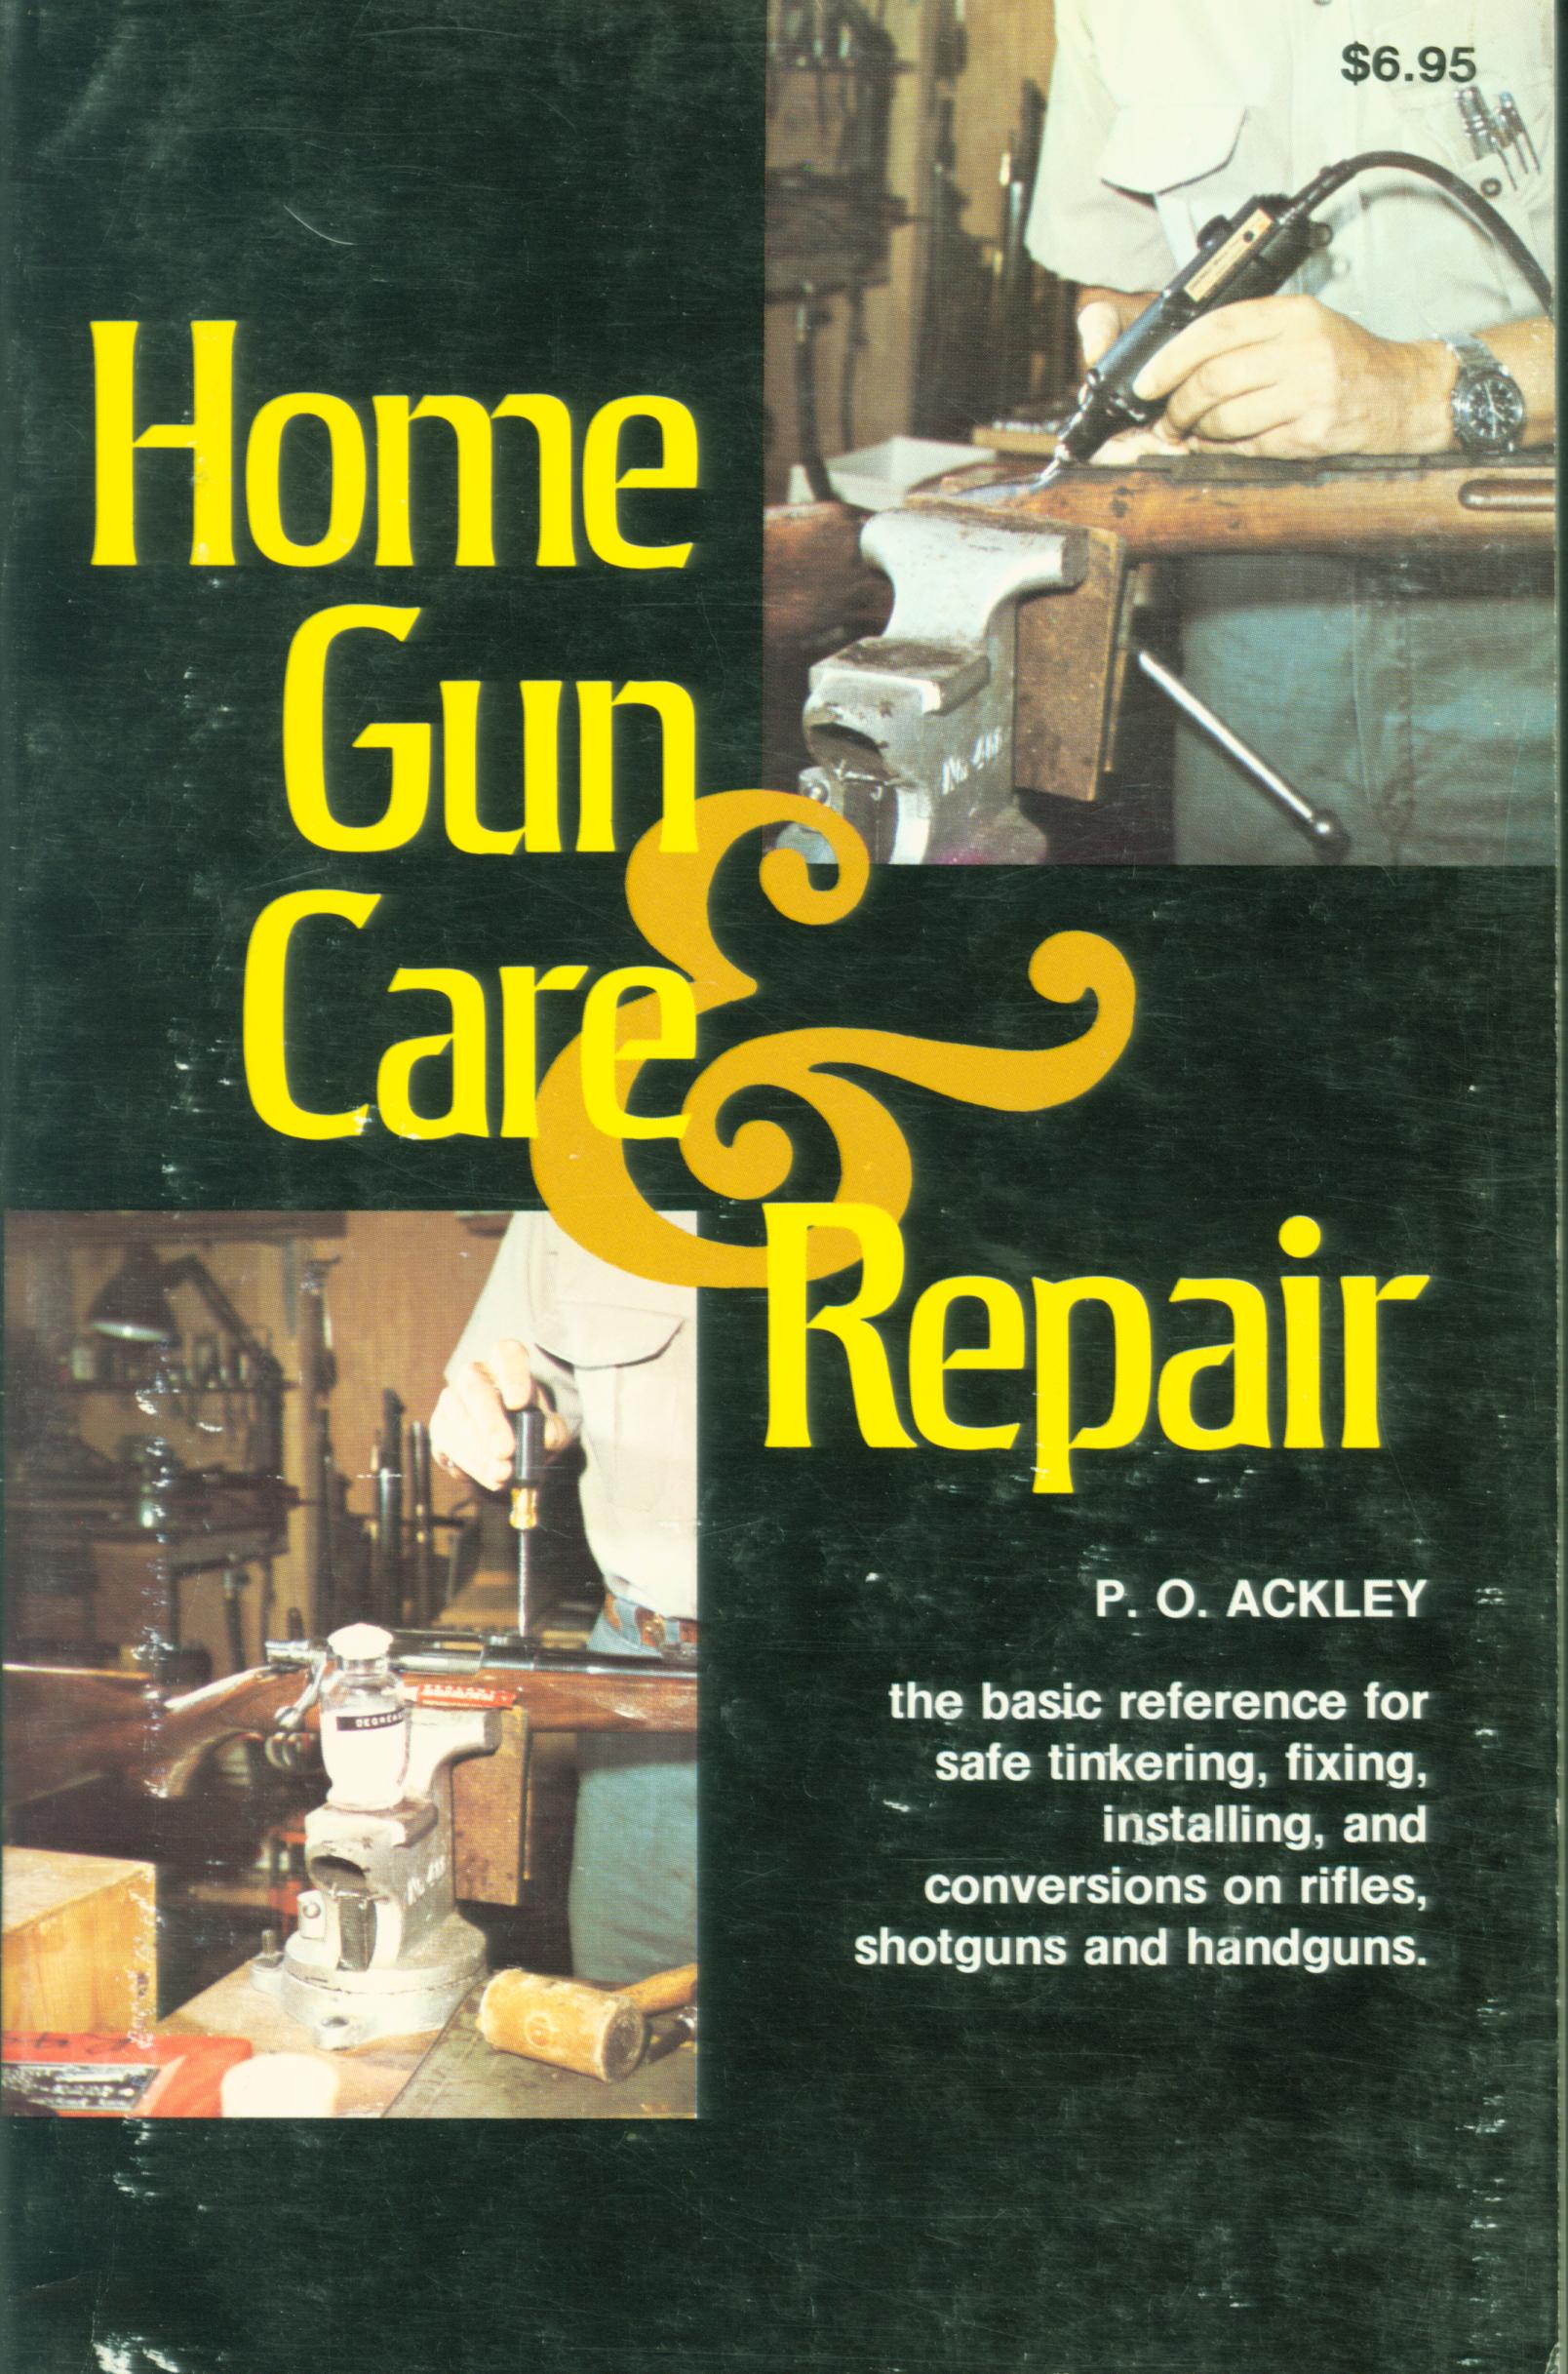 HOME GUN CARE AND REPAIR. 